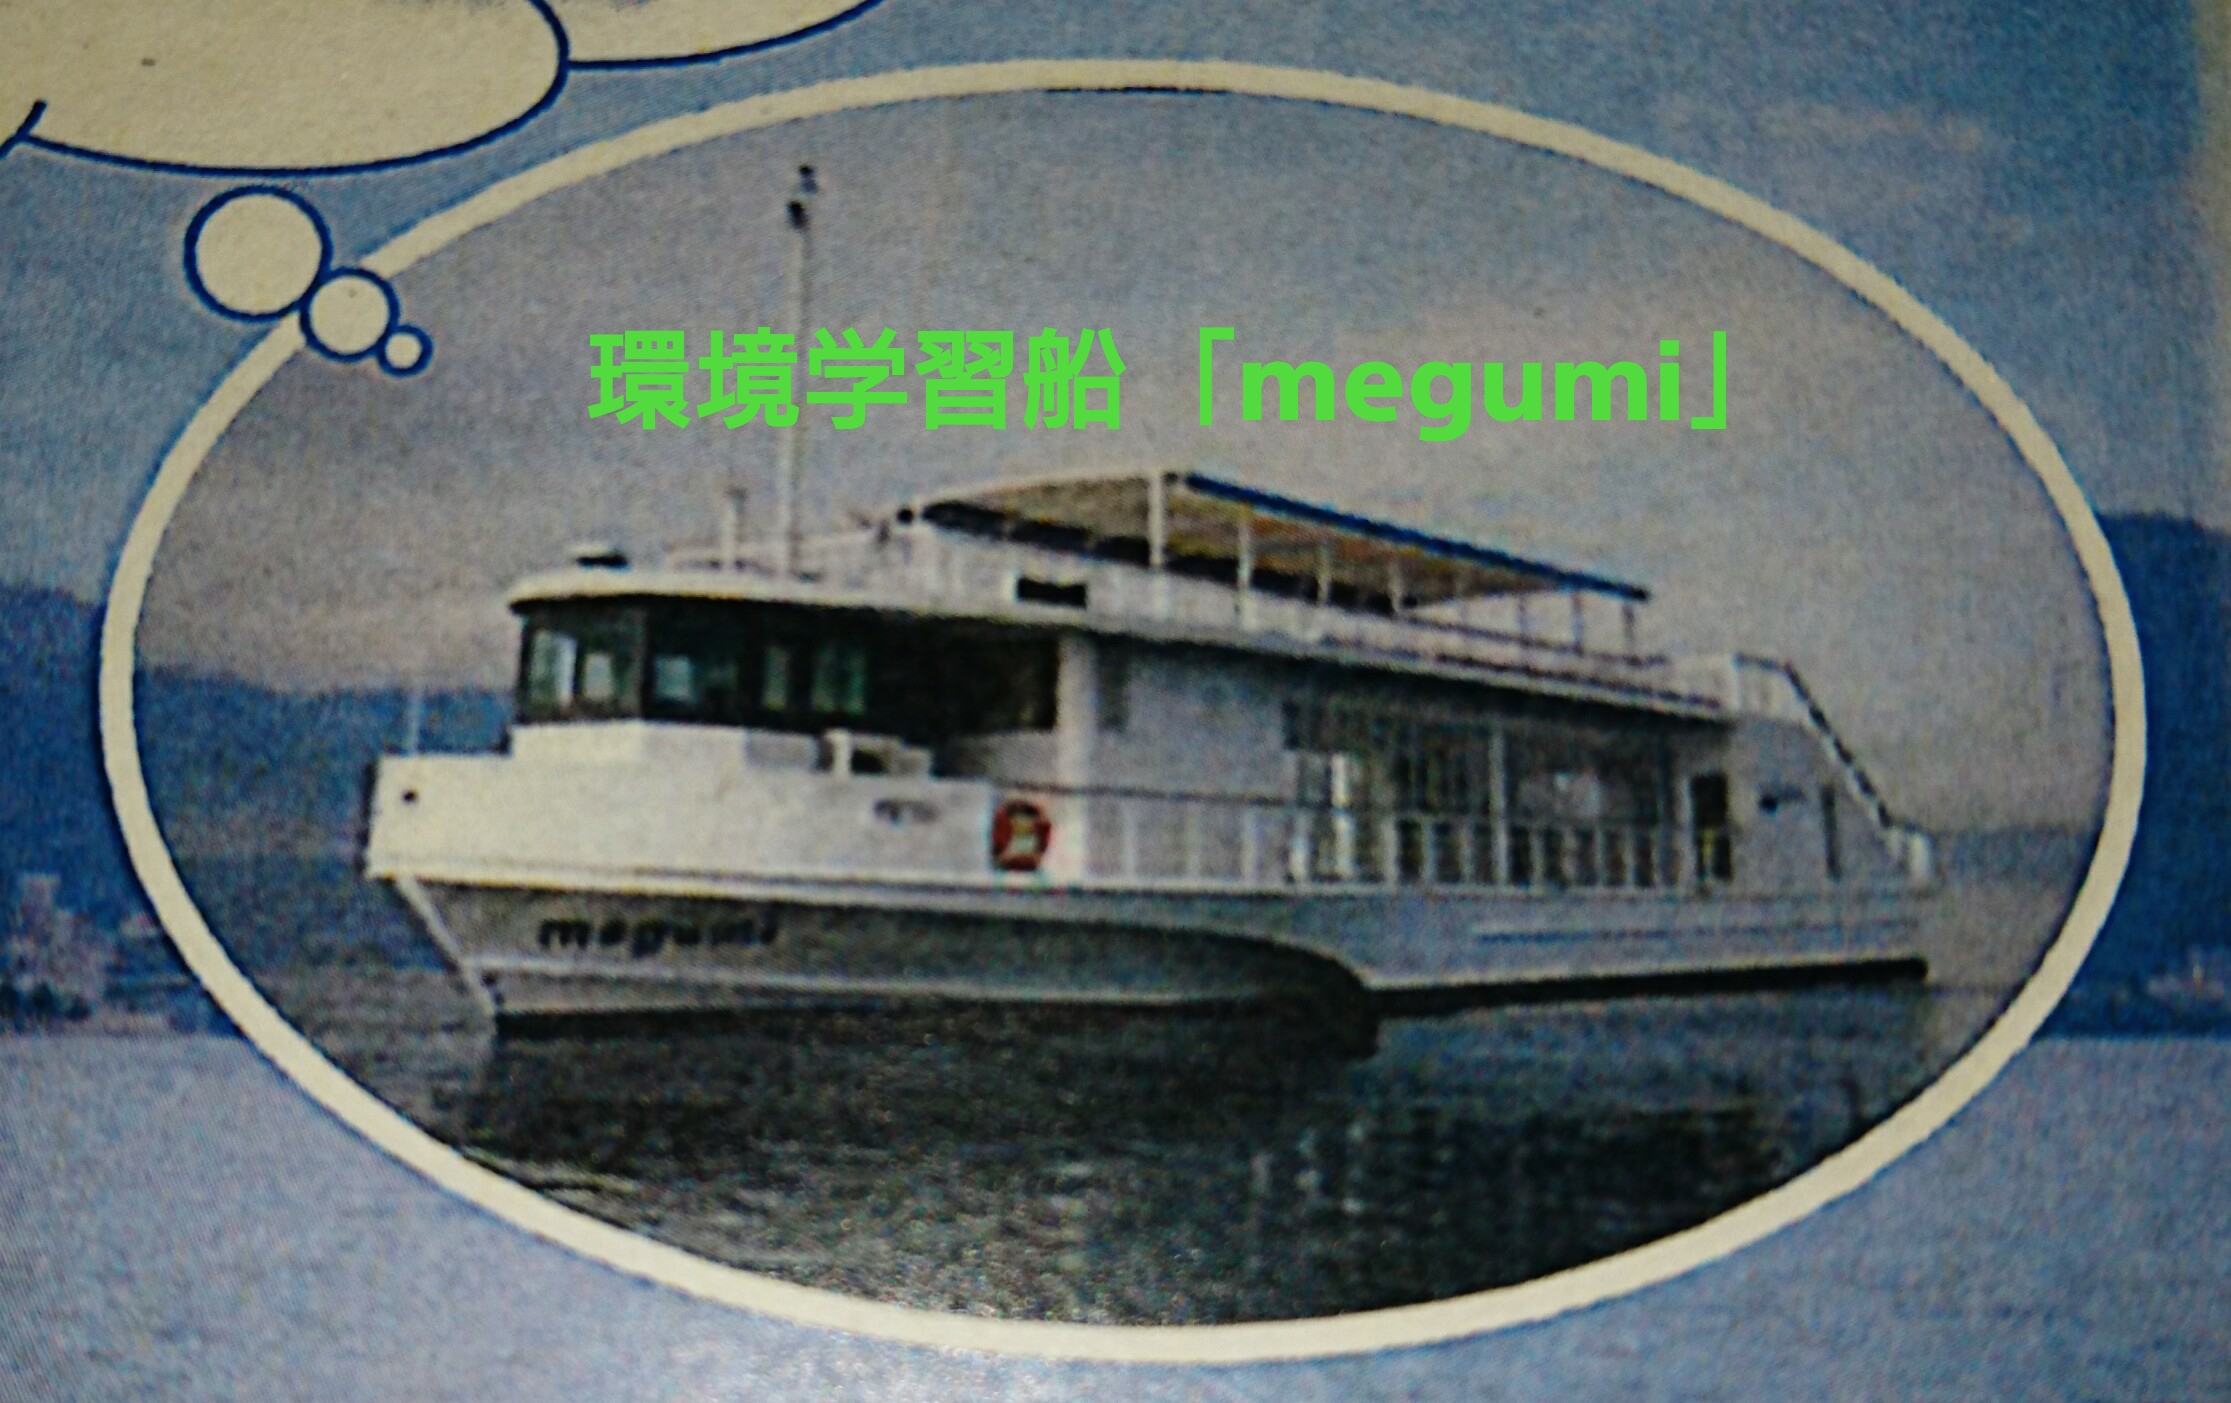 環境学習船「megumi」に乗って、対岸景観クルーズしてみませんか？（草津市在住の小学3年生以上対象）